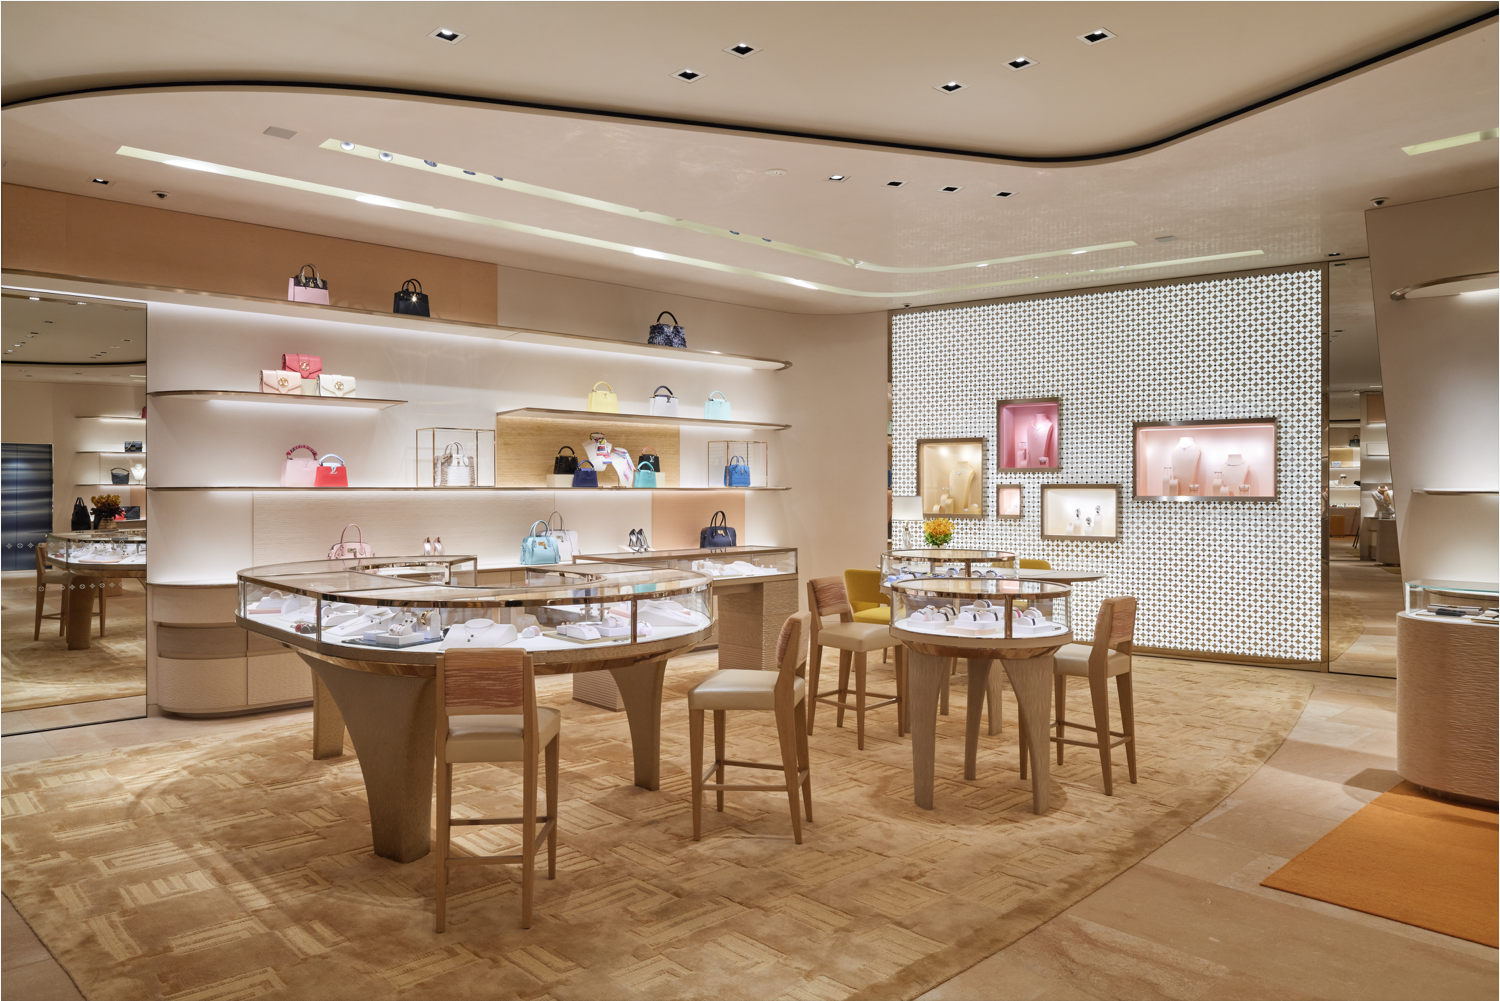 Tokyo: Louis Vuitton Pop-Up Store – WindowsWear